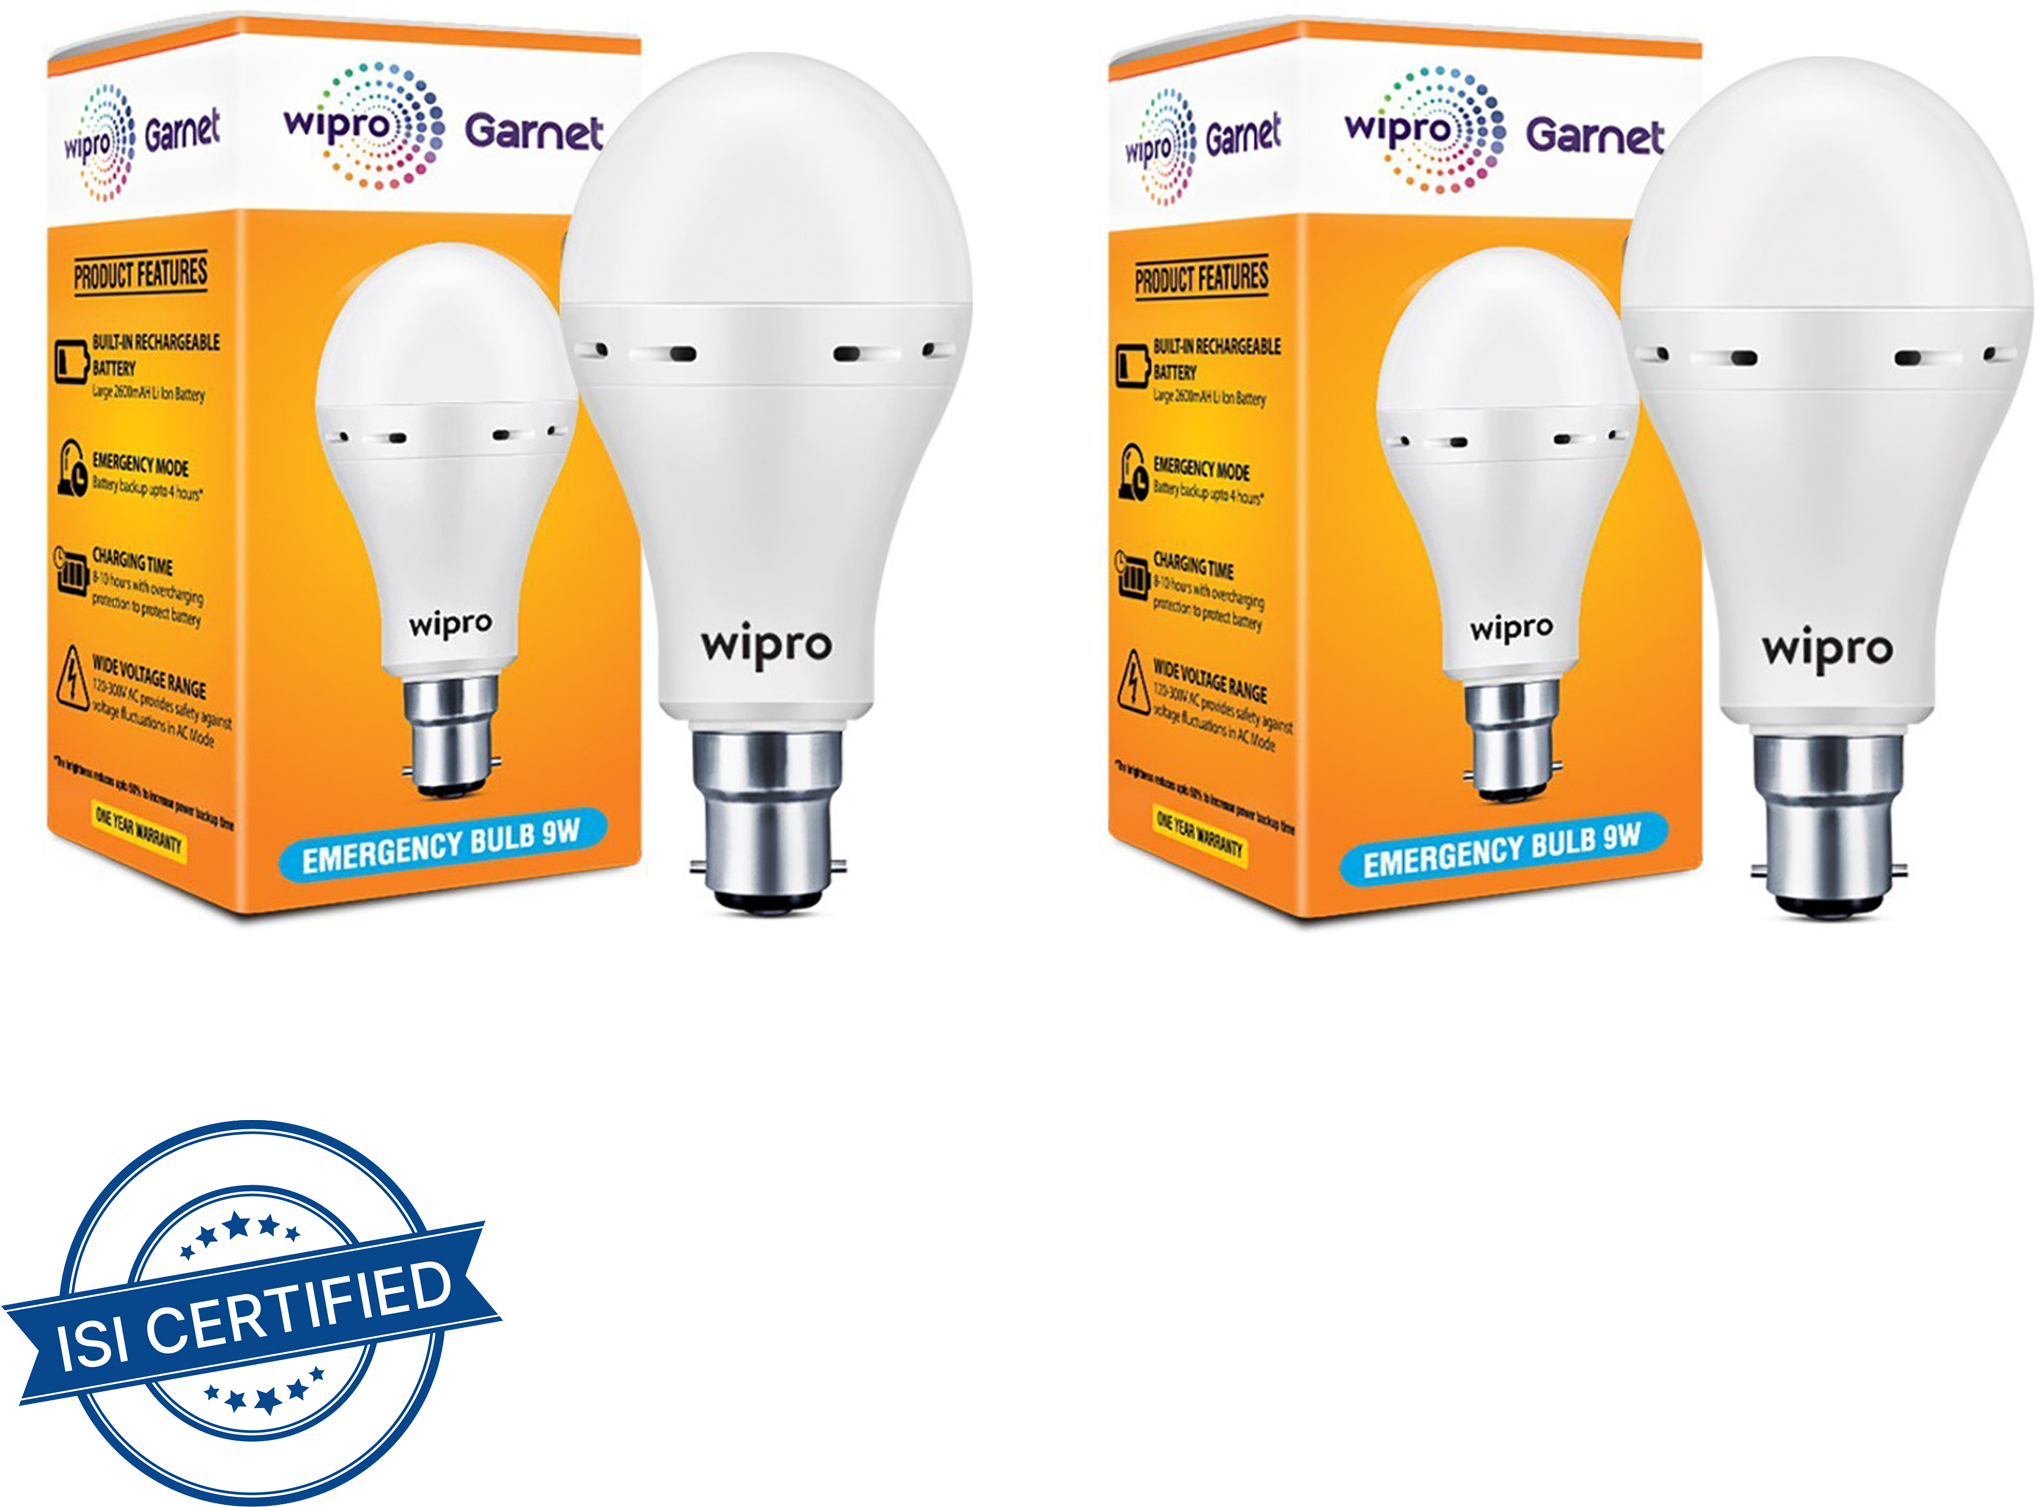 Wipro Garnet 9W Invertor LED 4 hours Bulb Emergency Light  (White)